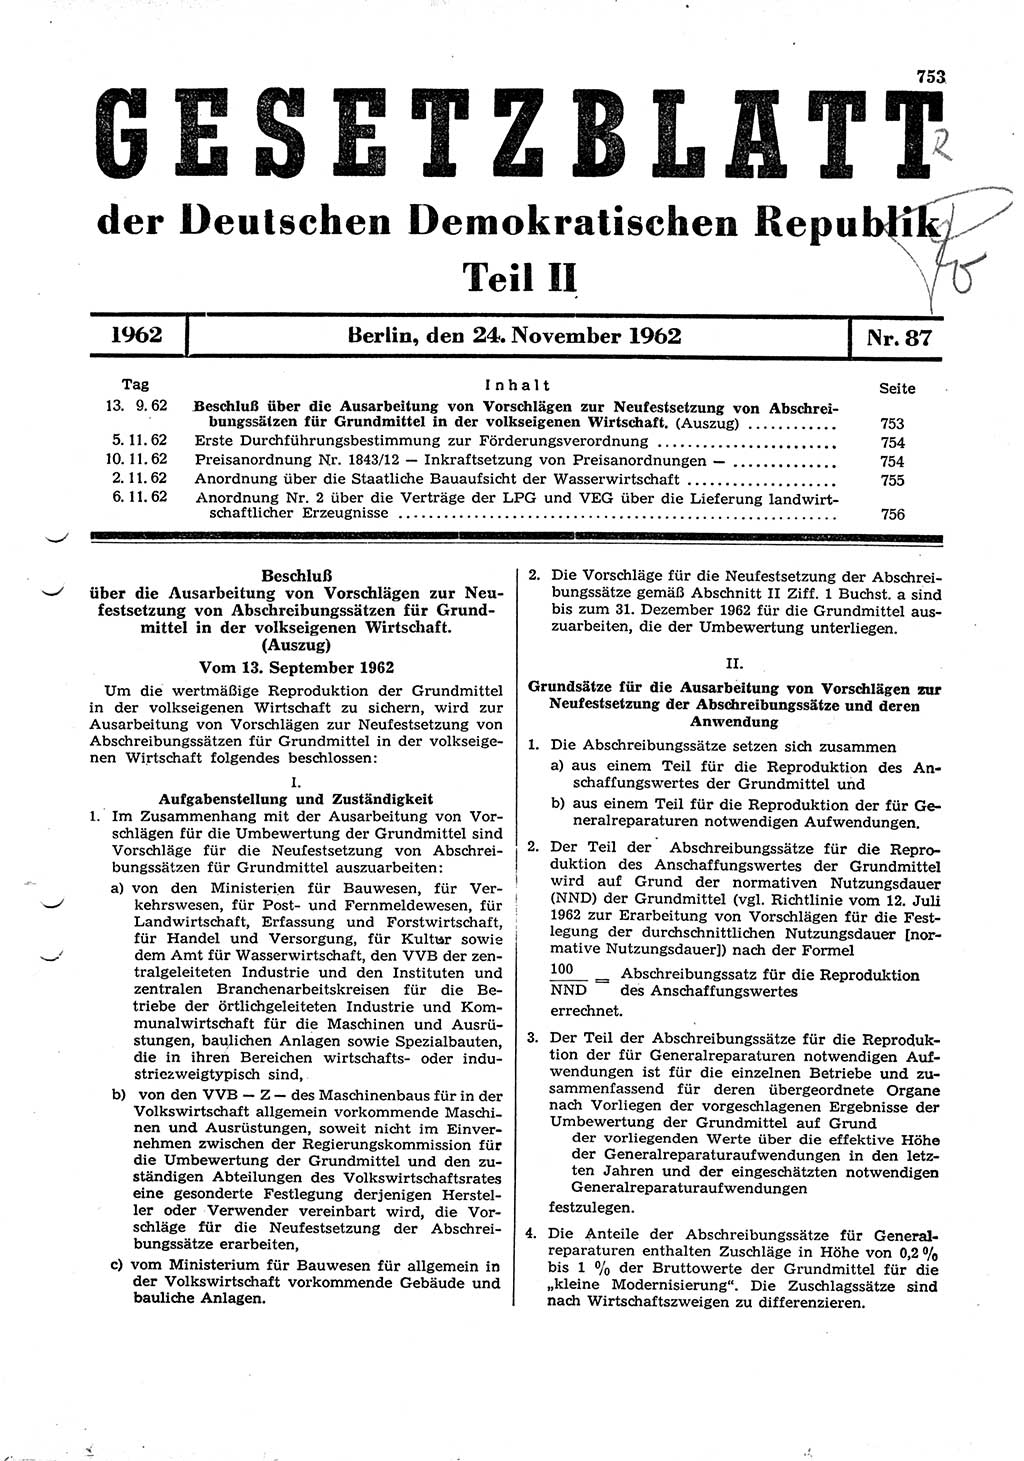 Gesetzblatt (GBl.) der Deutschen Demokratischen Republik (DDR) Teil ⅠⅠ 1962, Seite 753 (GBl. DDR ⅠⅠ 1962, S. 753)